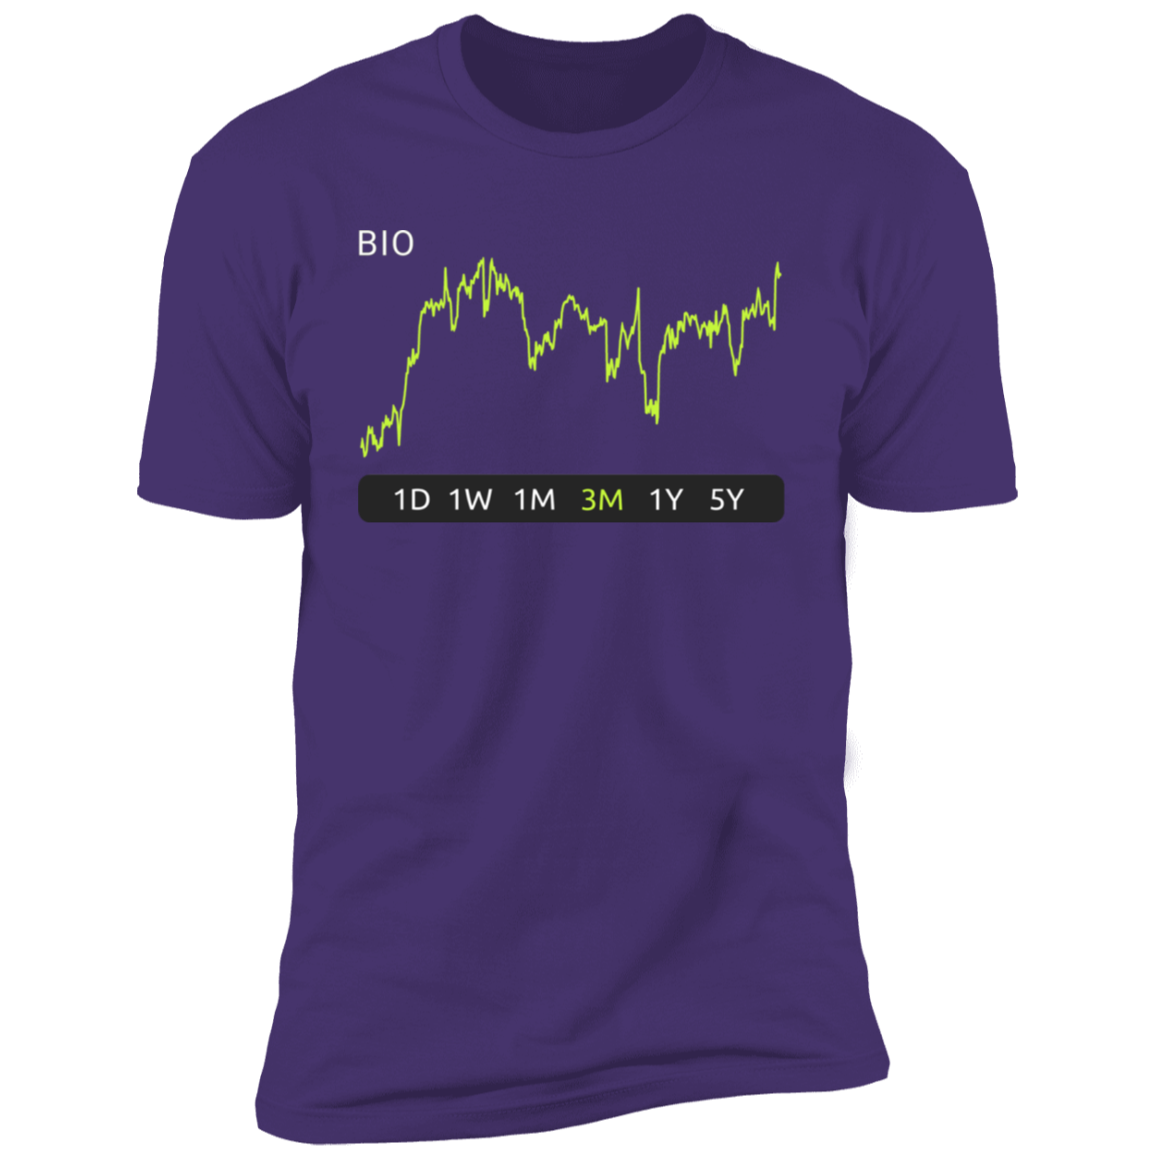 BIO Stock 3m Premium T-Shirt